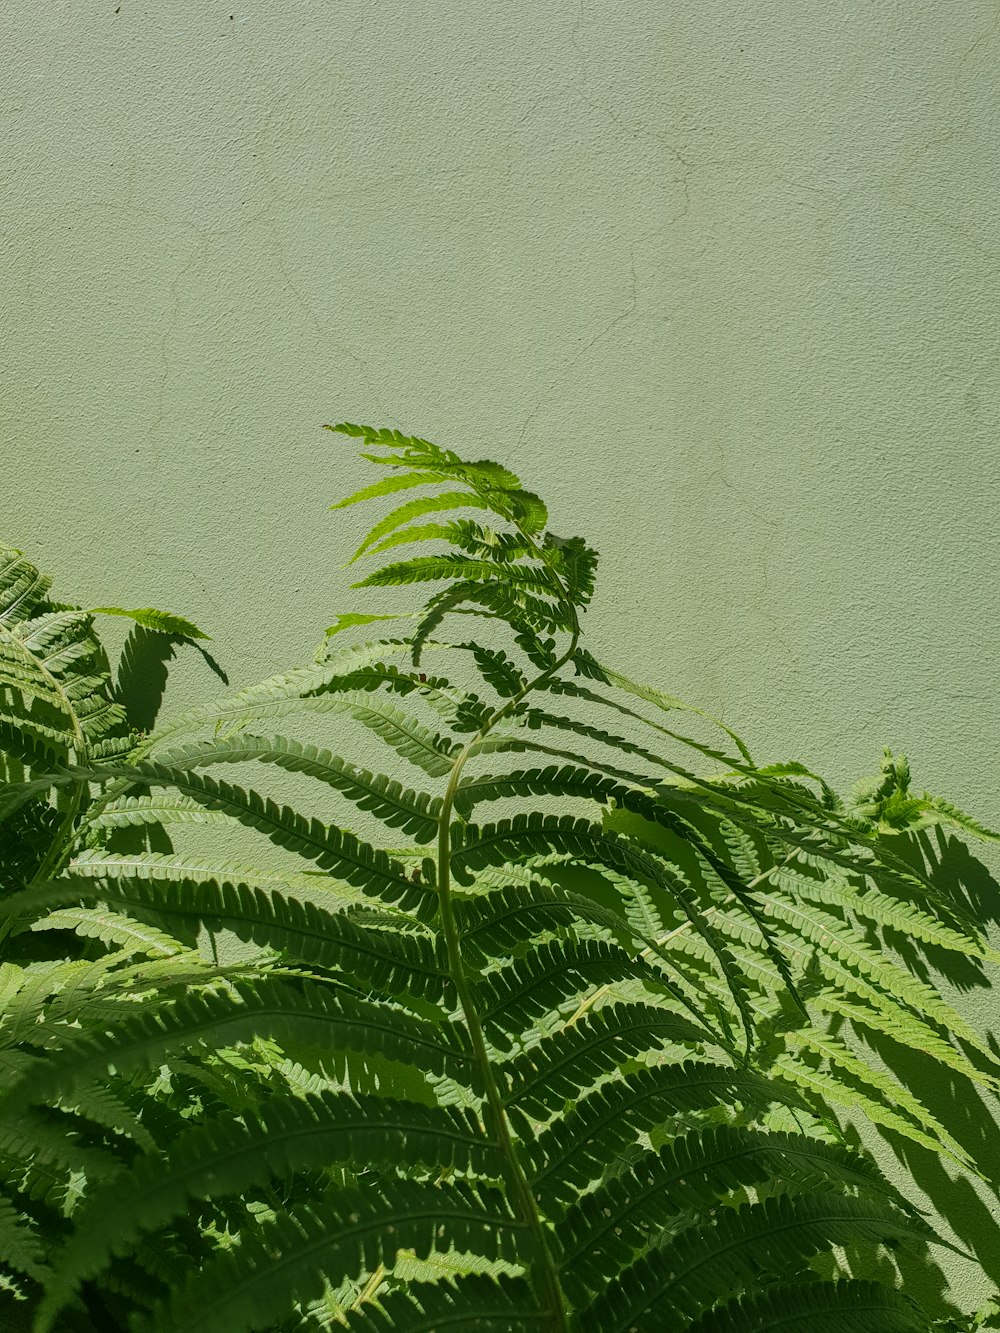 green-leafed fern plant